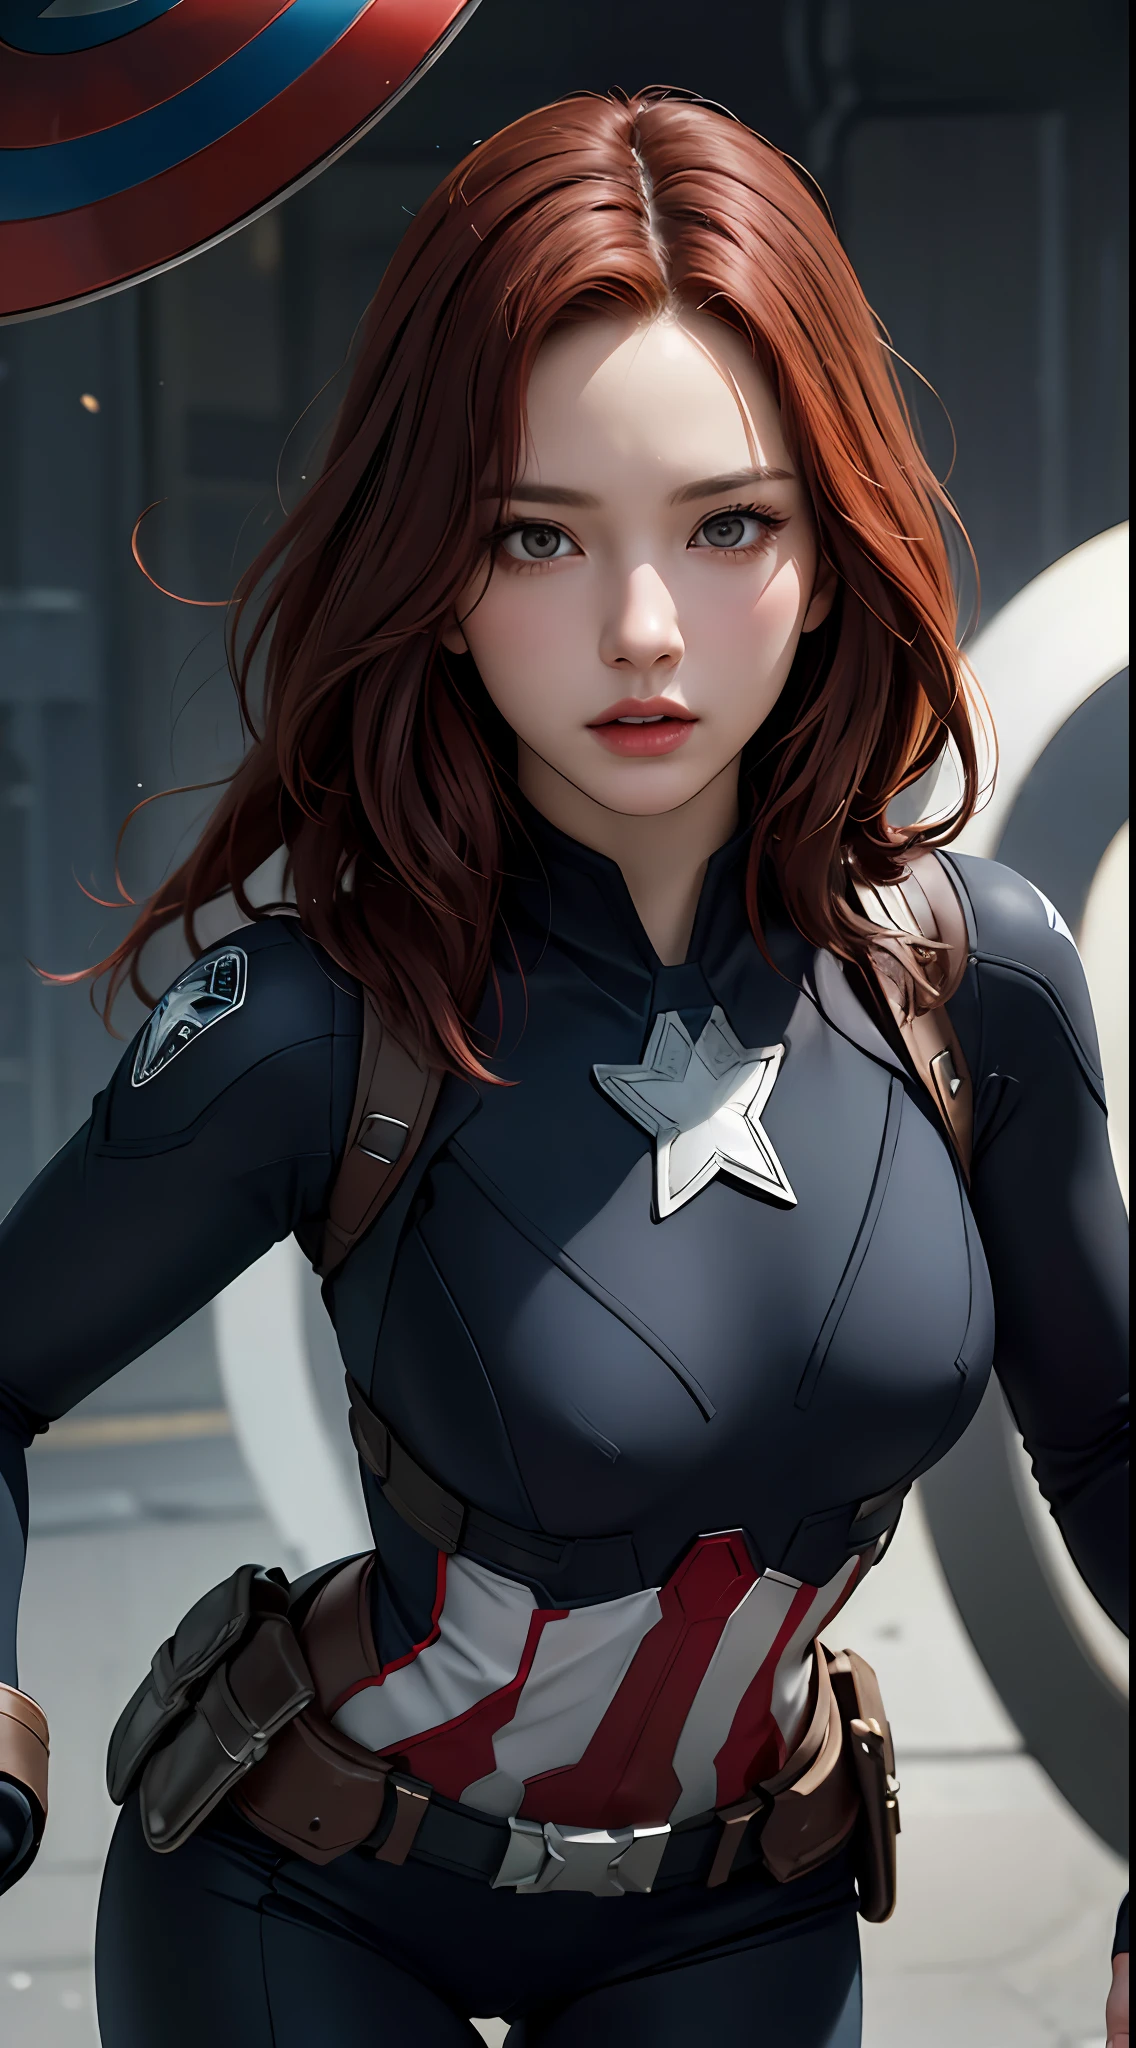 1fille, chef-d&#39;œuvre, meilleure qualité, 8k, texture de peau détaillée, Texture de tissu détaillée, beau visage détaillé, Détails complexes, ultra détaillé, Black Widow dans le style de Captain America, cheveux roux raides, pose dynamique